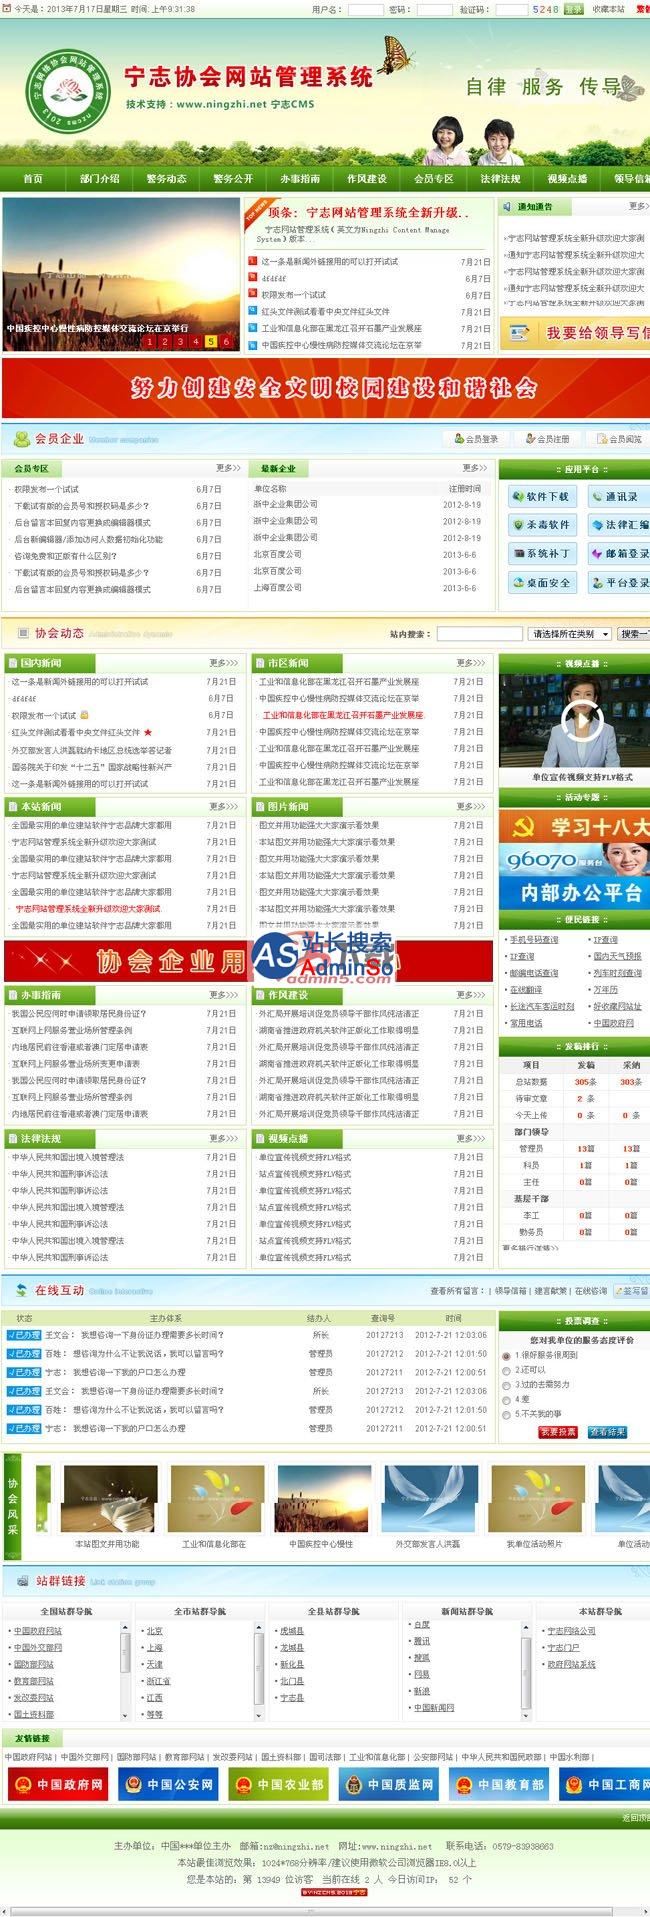 宁志协会团体门户网站系统 演示图片